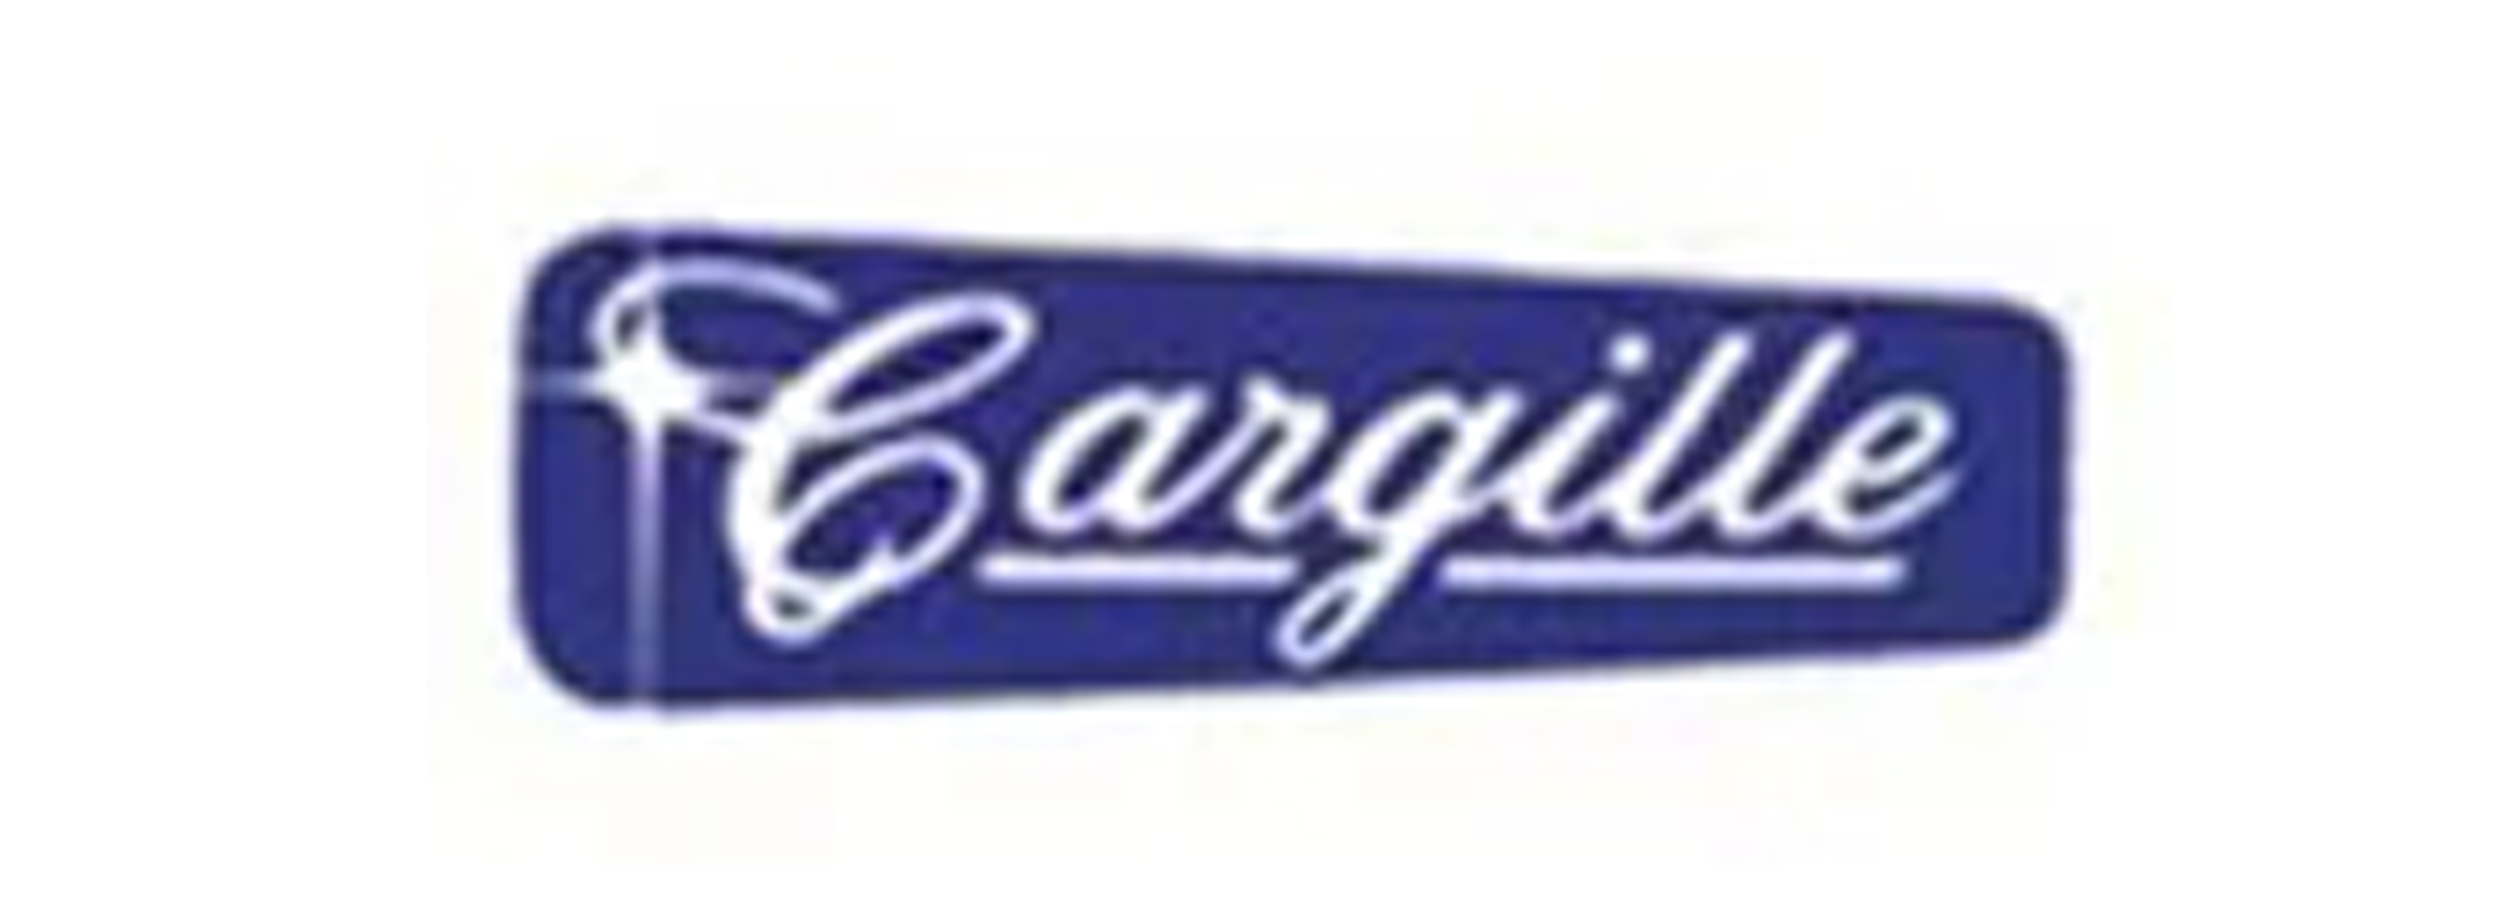 cargille labs特约一级代理